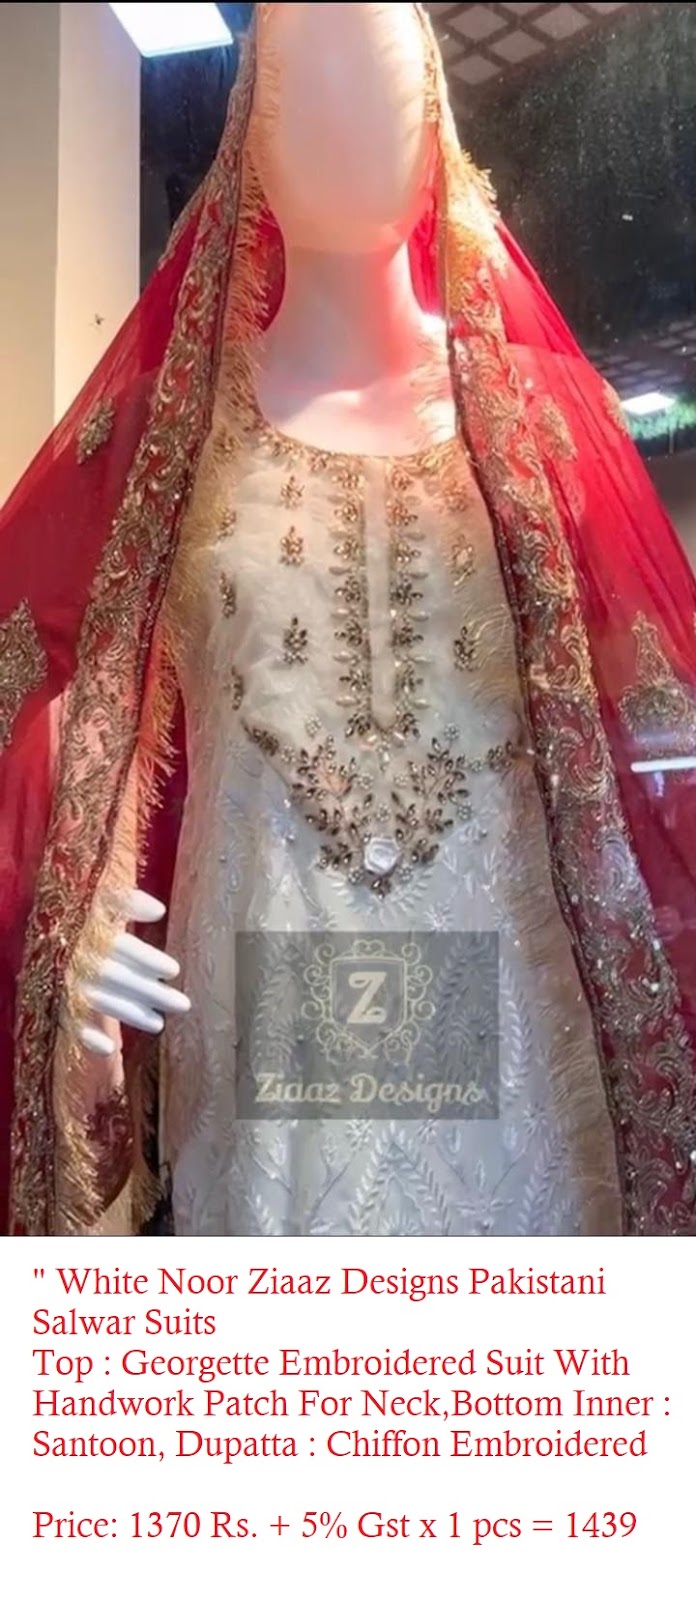 White Noor Ziaaz Designs Pakistani Salwar Suits Manufacturer Wholesaler